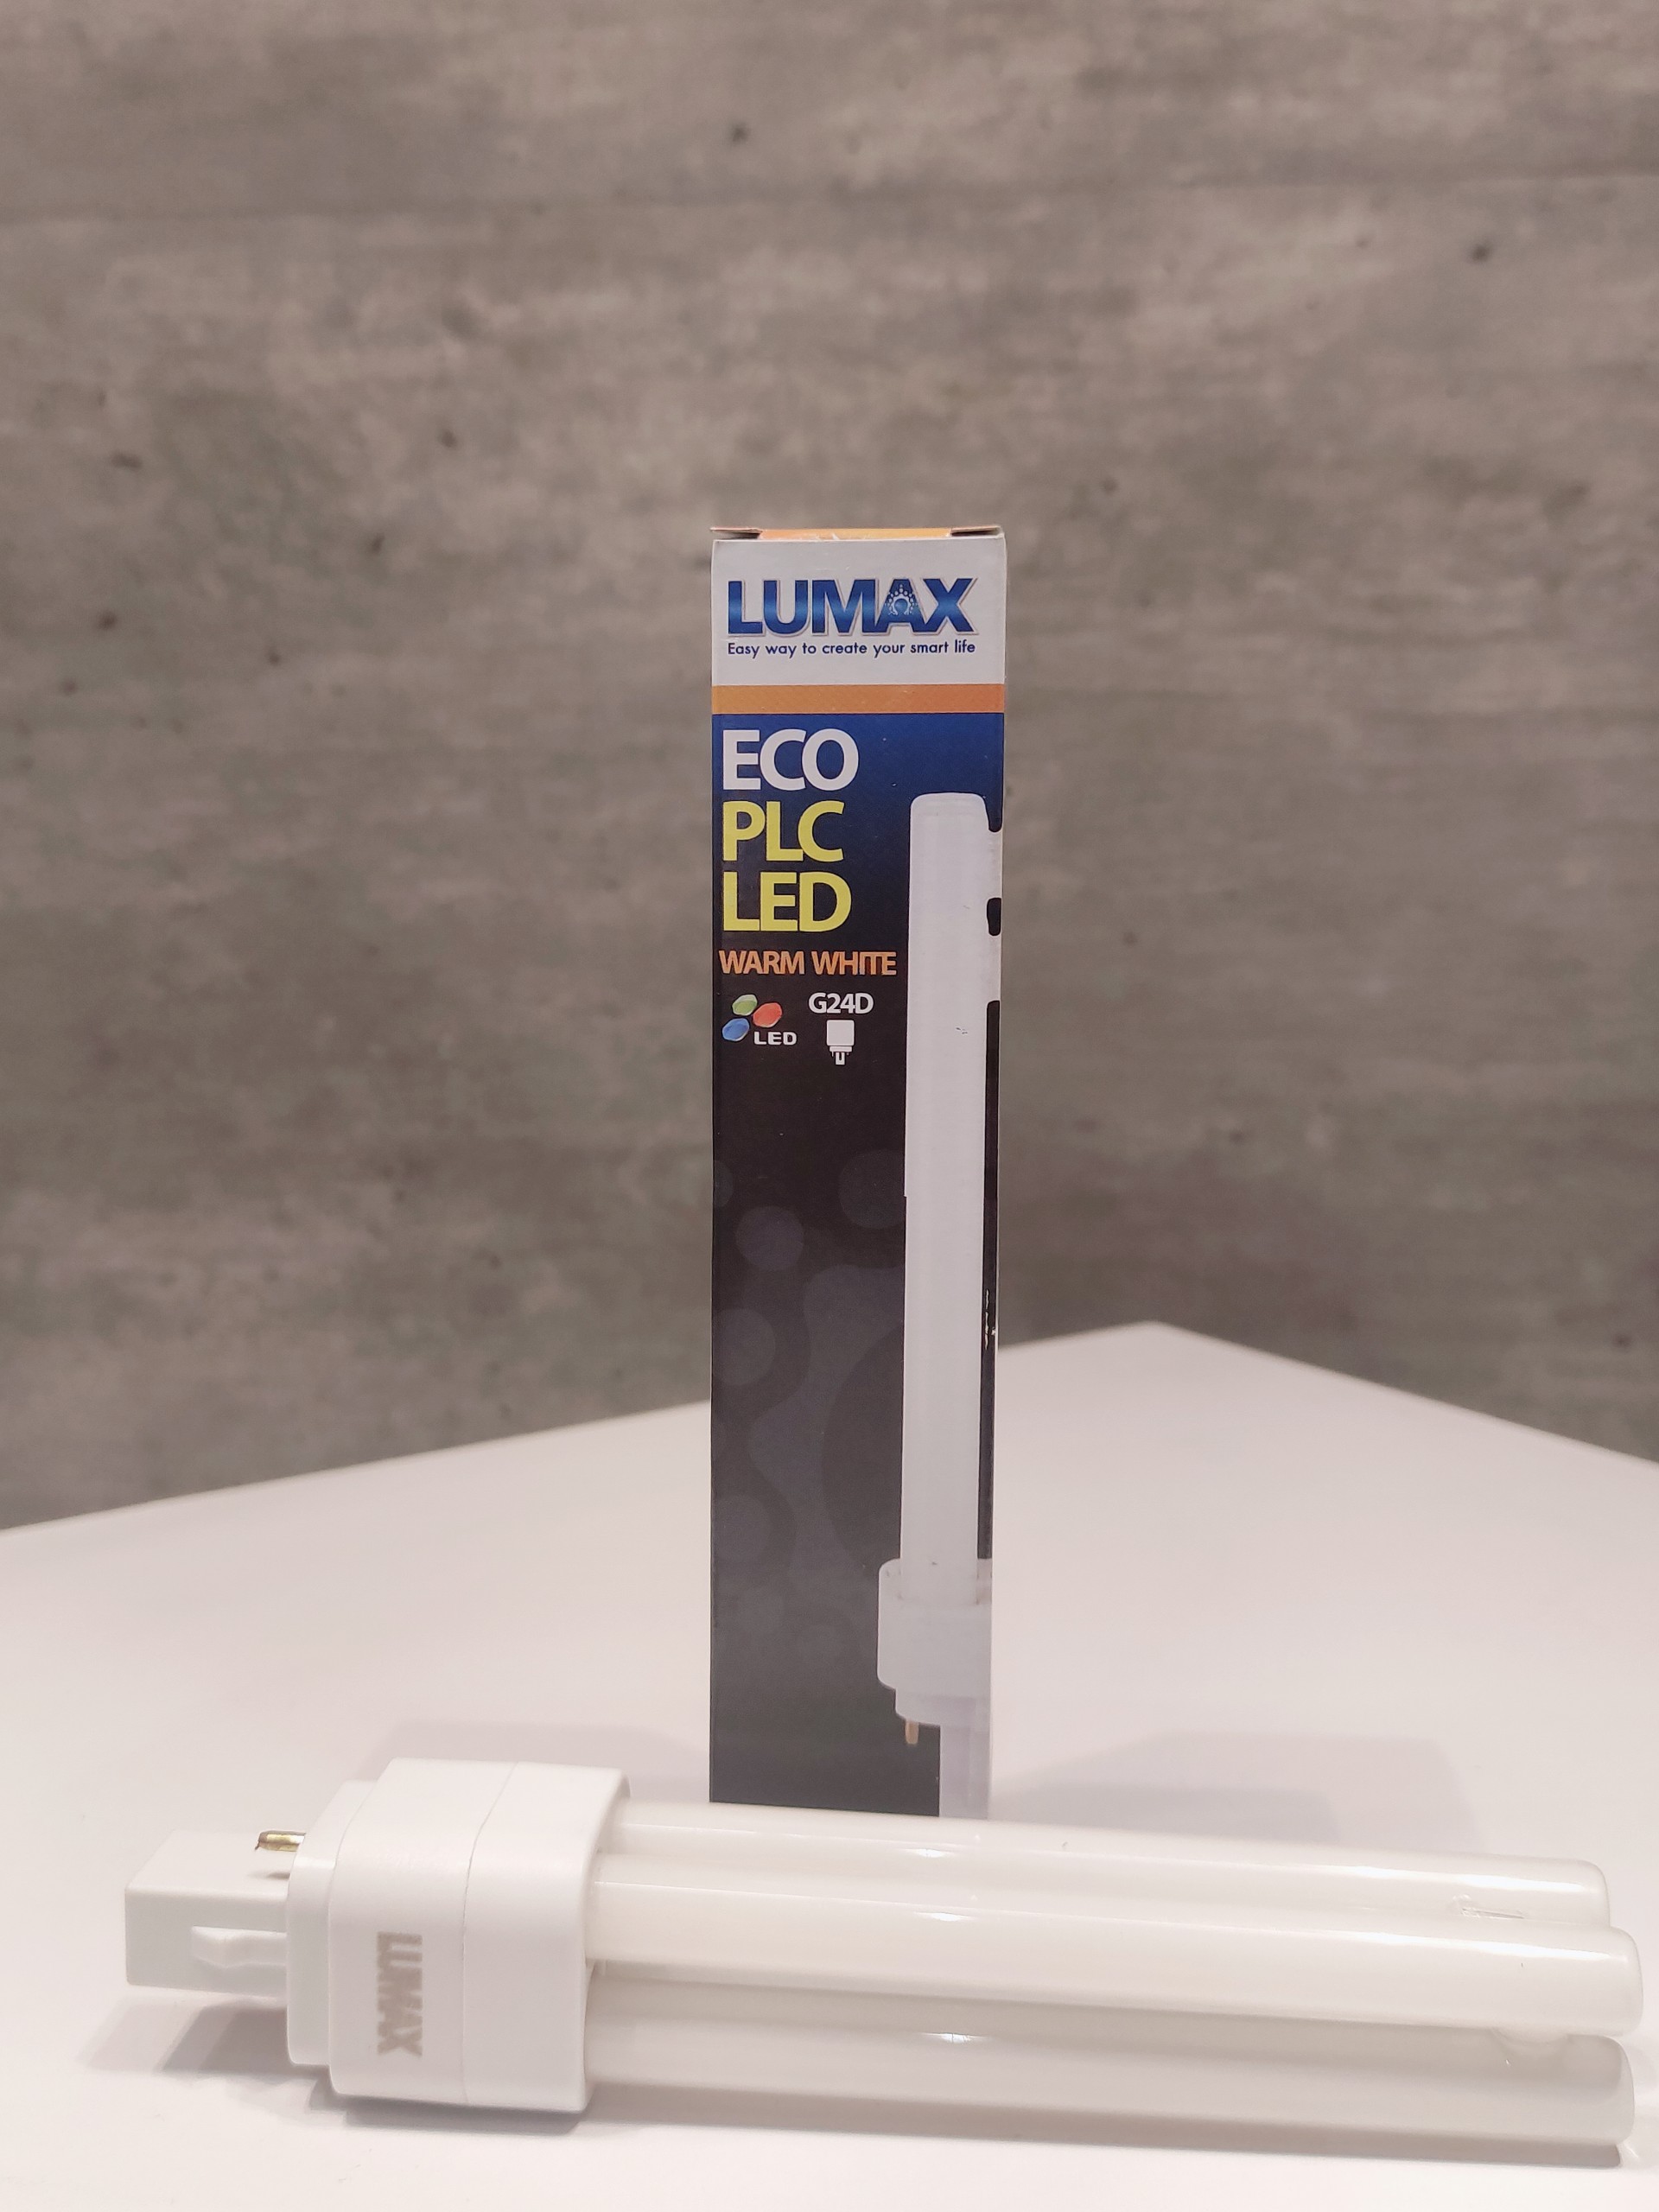 BÓNG ĐÈN LUMAX#PLC LED-1100LM/830/12W/G24